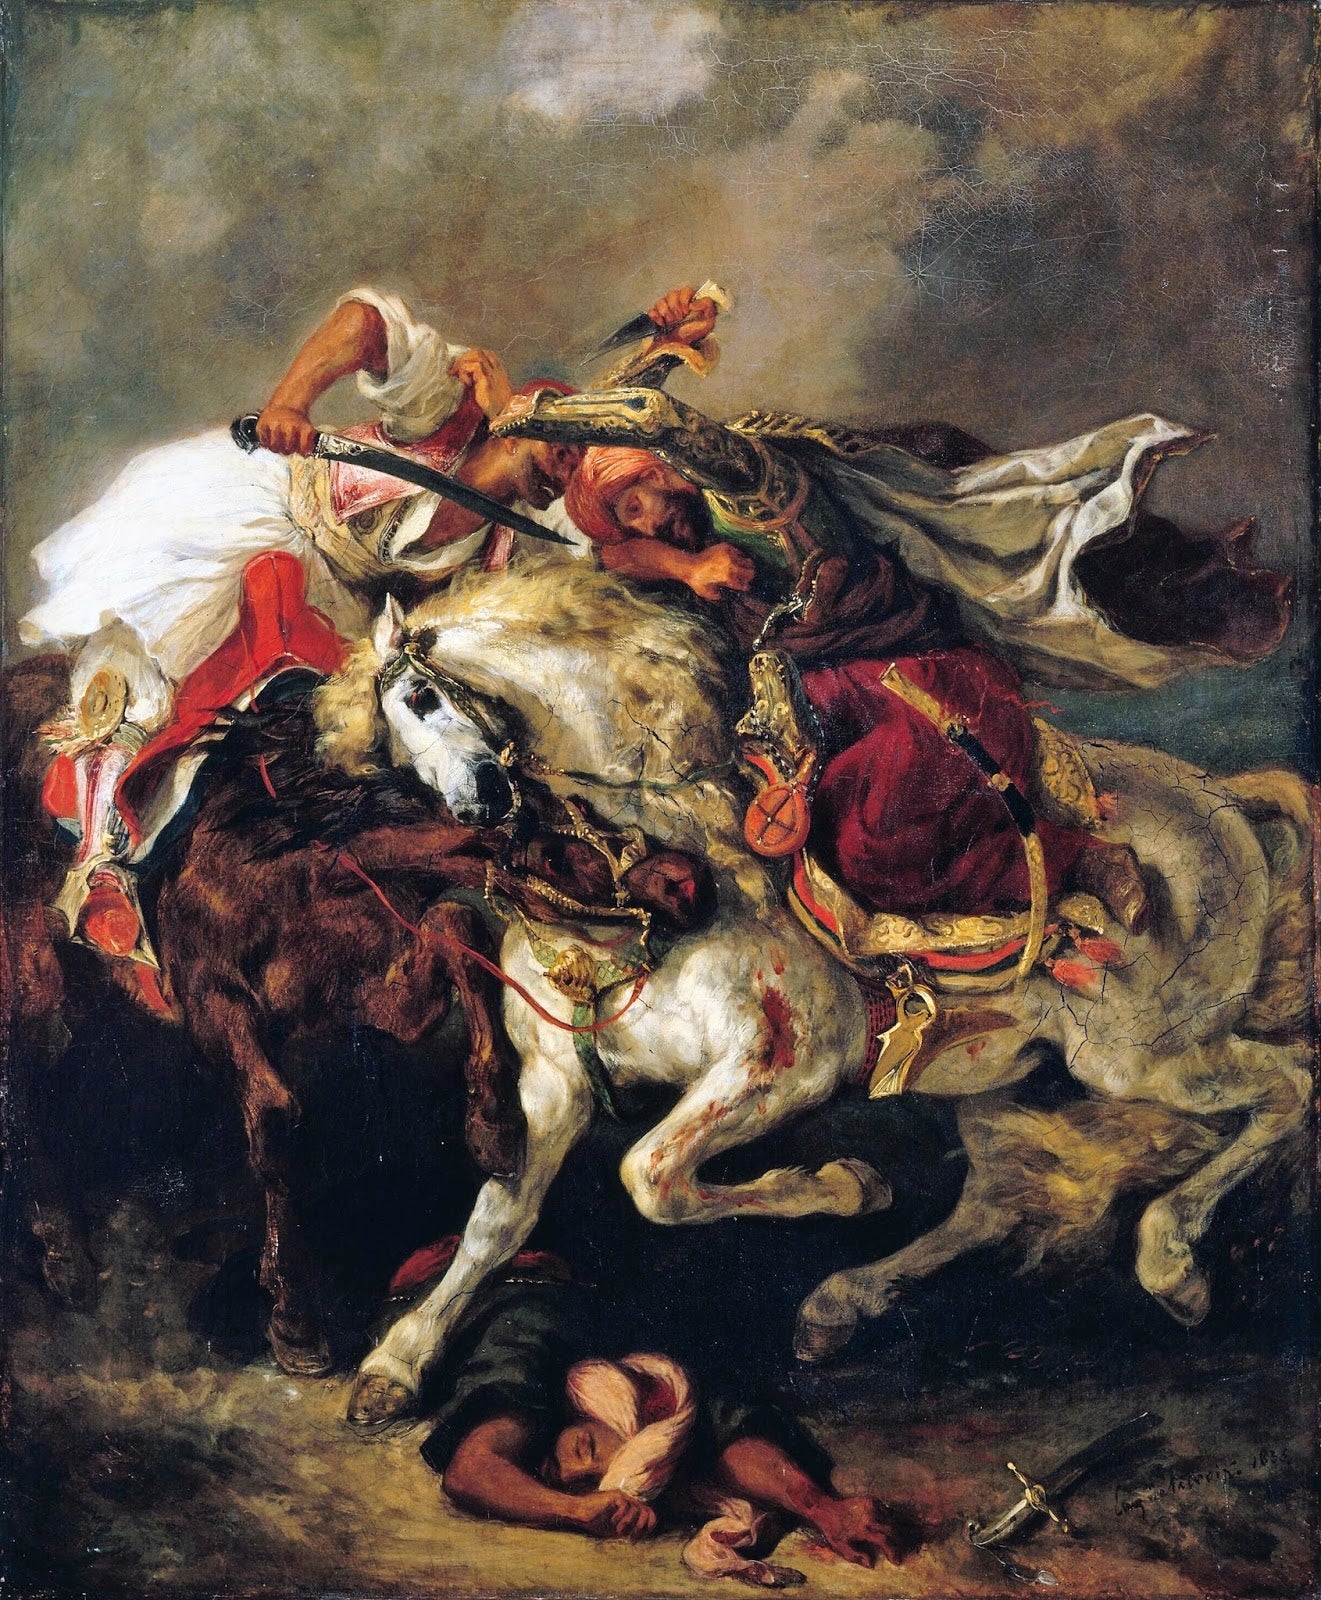 Le combat du Giaour et du Pacha - Eugène Delacroix